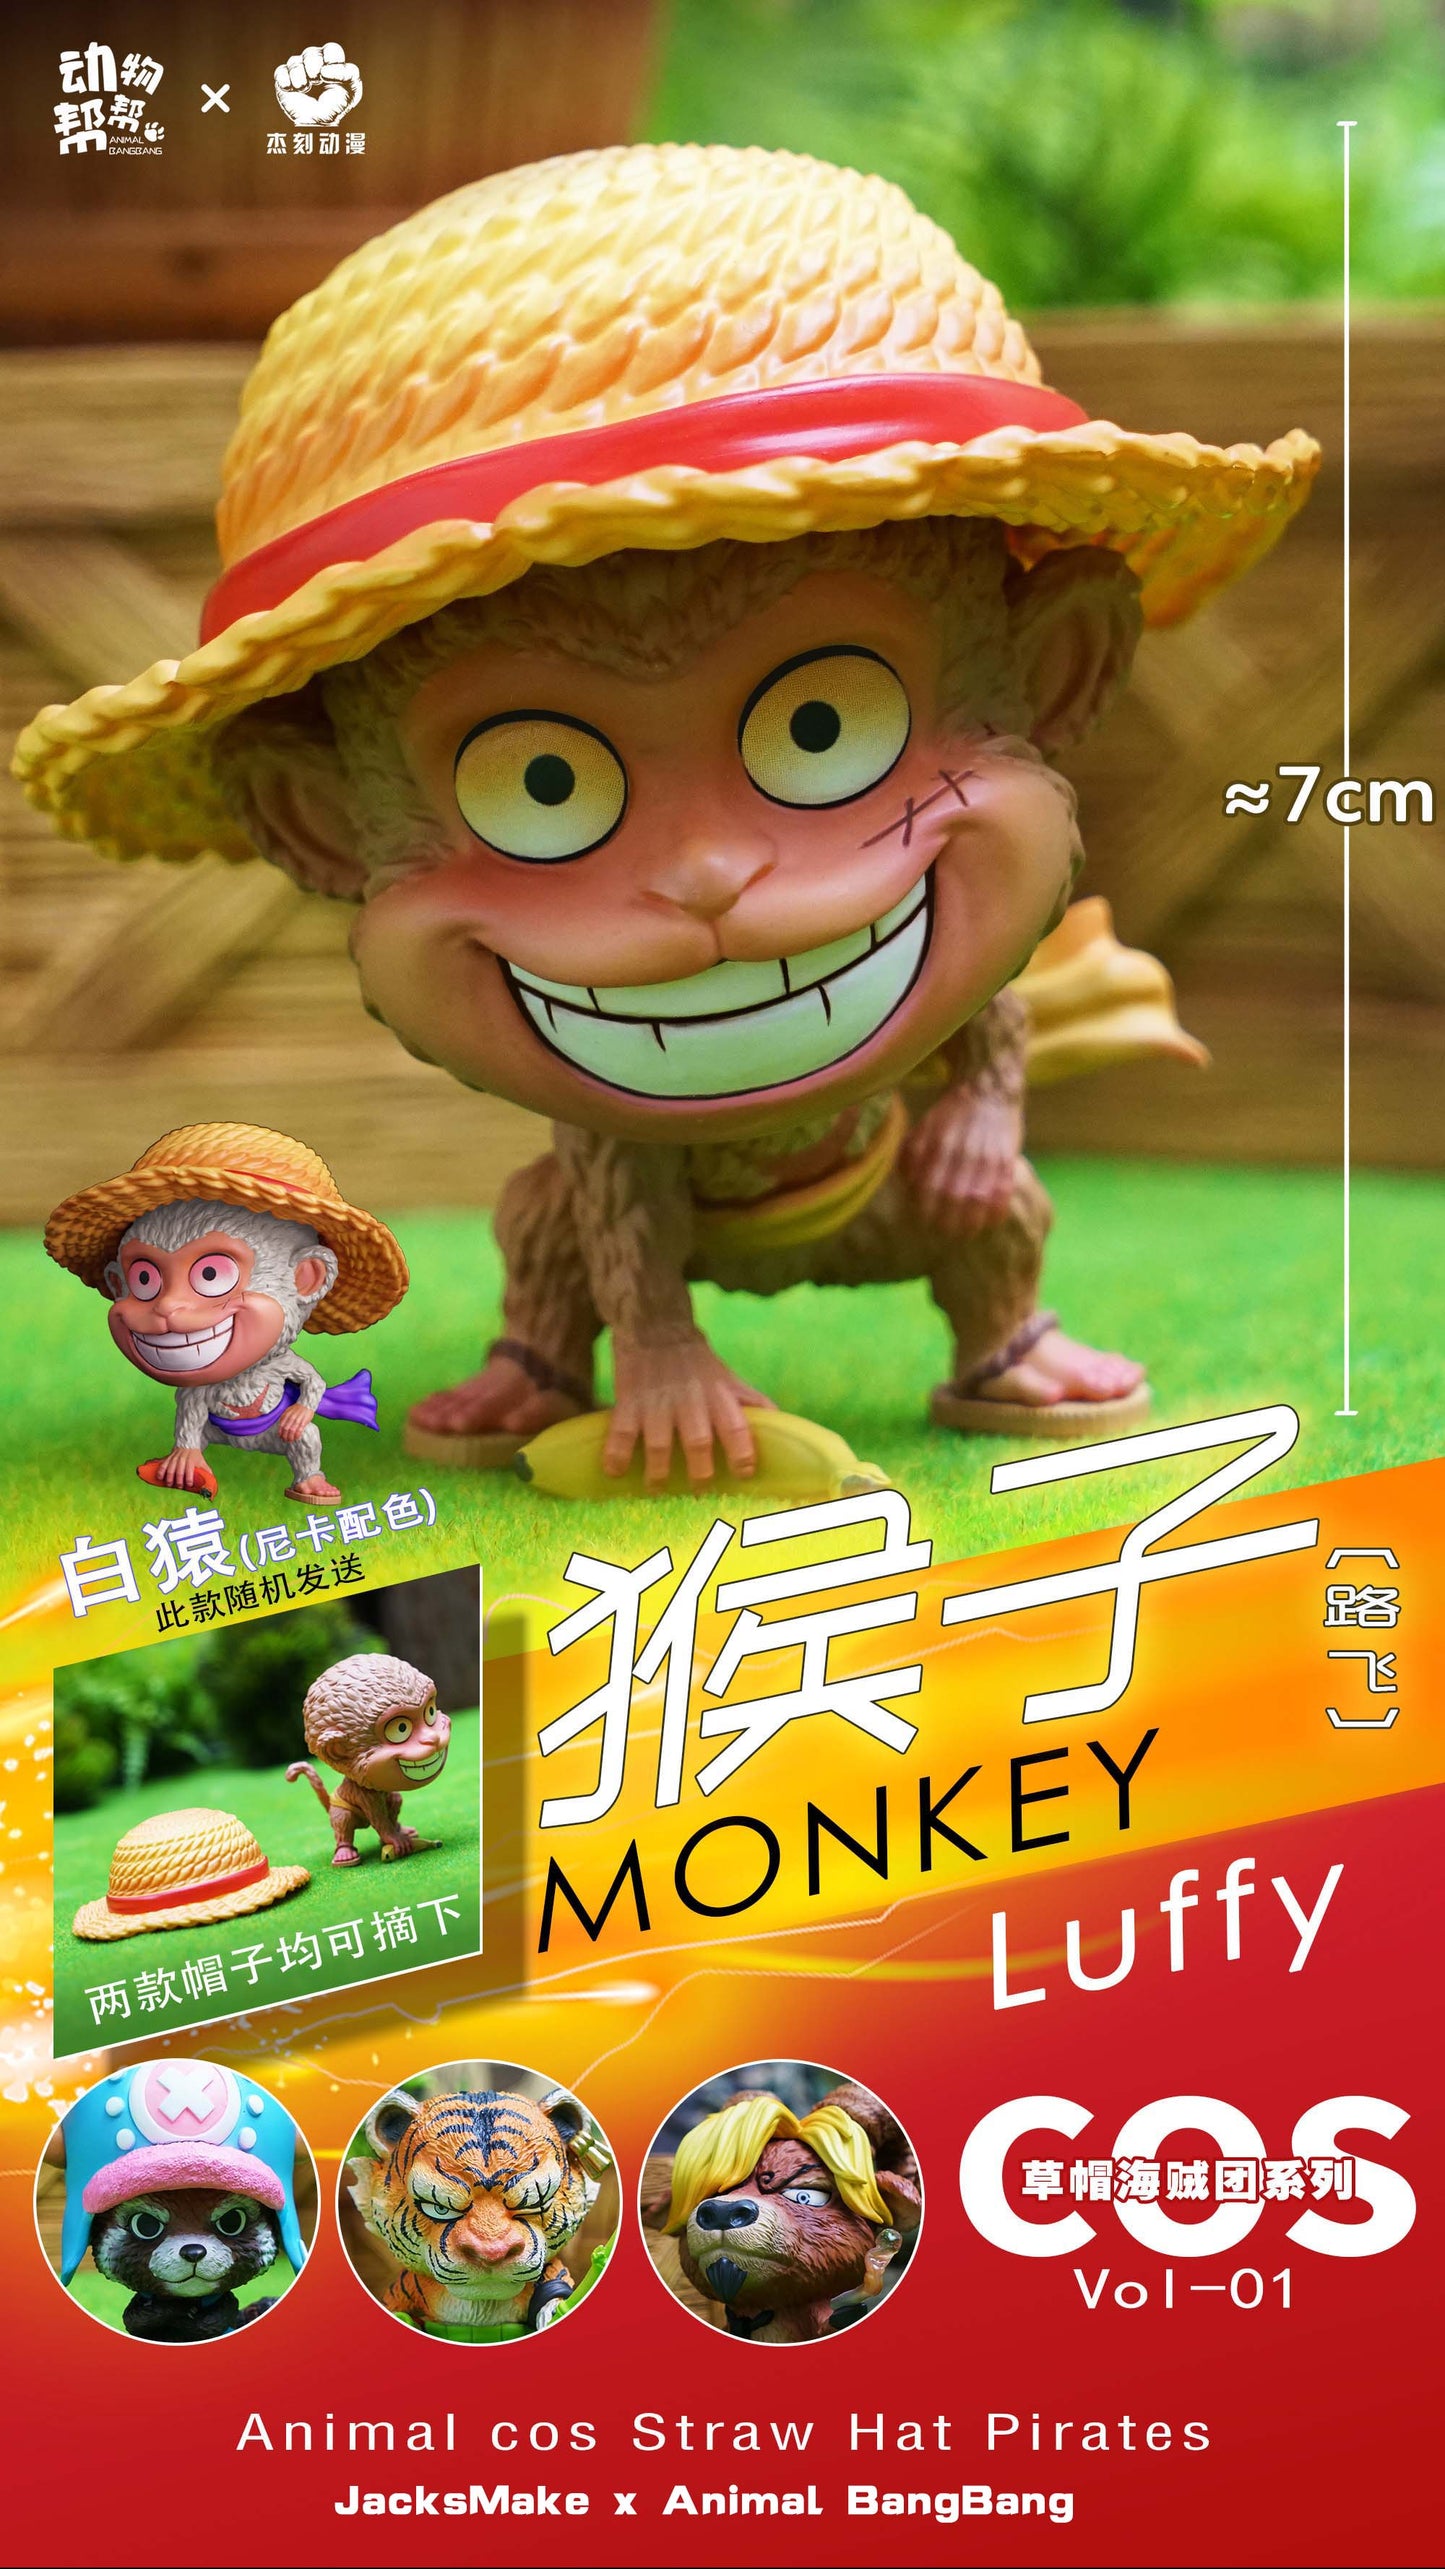 JacksMake x Animal BangBang - Monkey Luffy